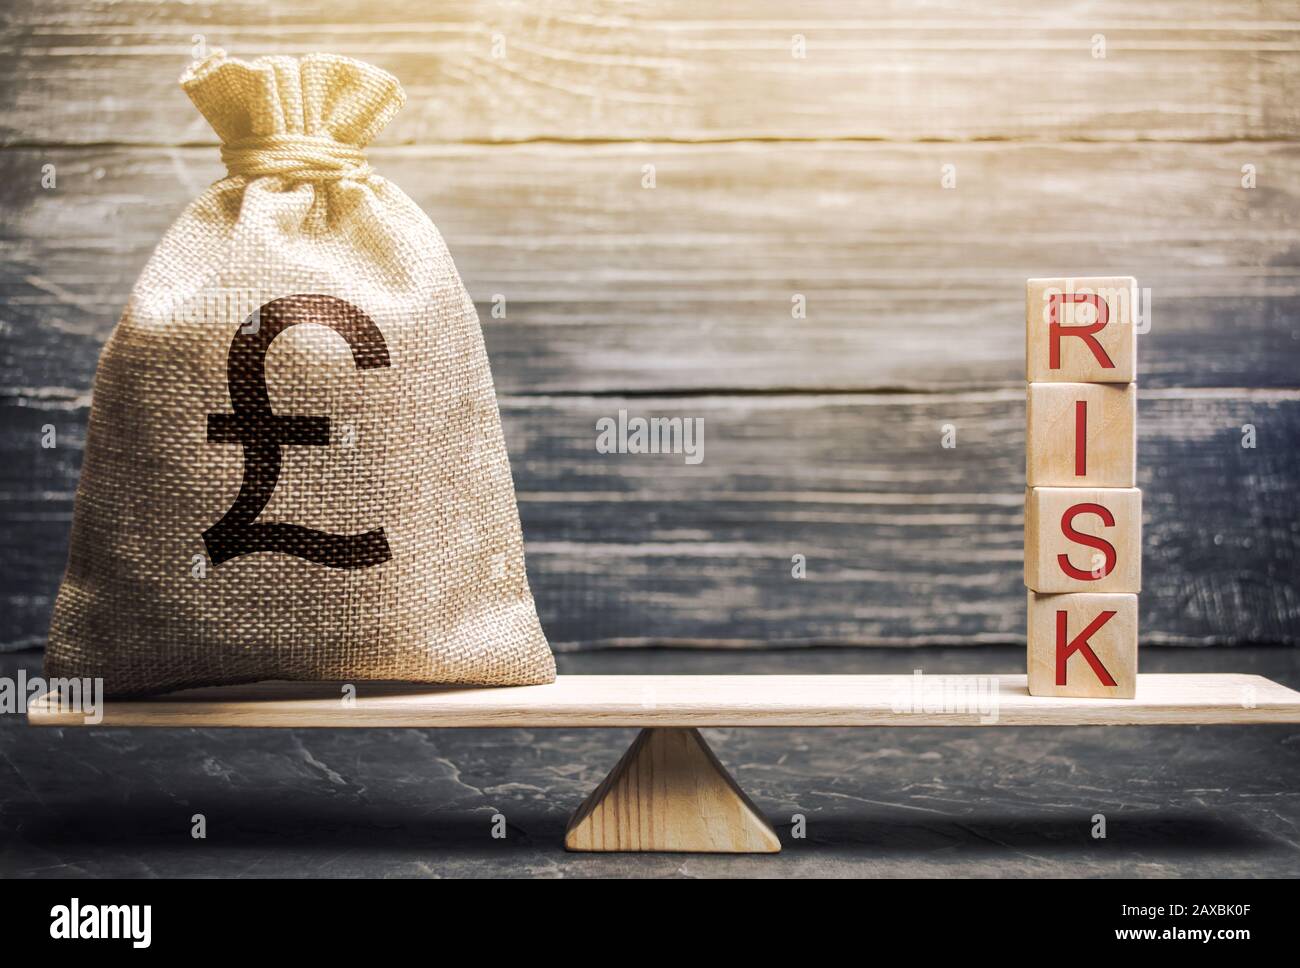 Geldbeutel und Holzklötze mit dem Wort Risiko auf der Waage. Management und Bewertung von Geschäftsrisiken. Strategische, finanzielle und operative Risiken. Ins Stockfoto